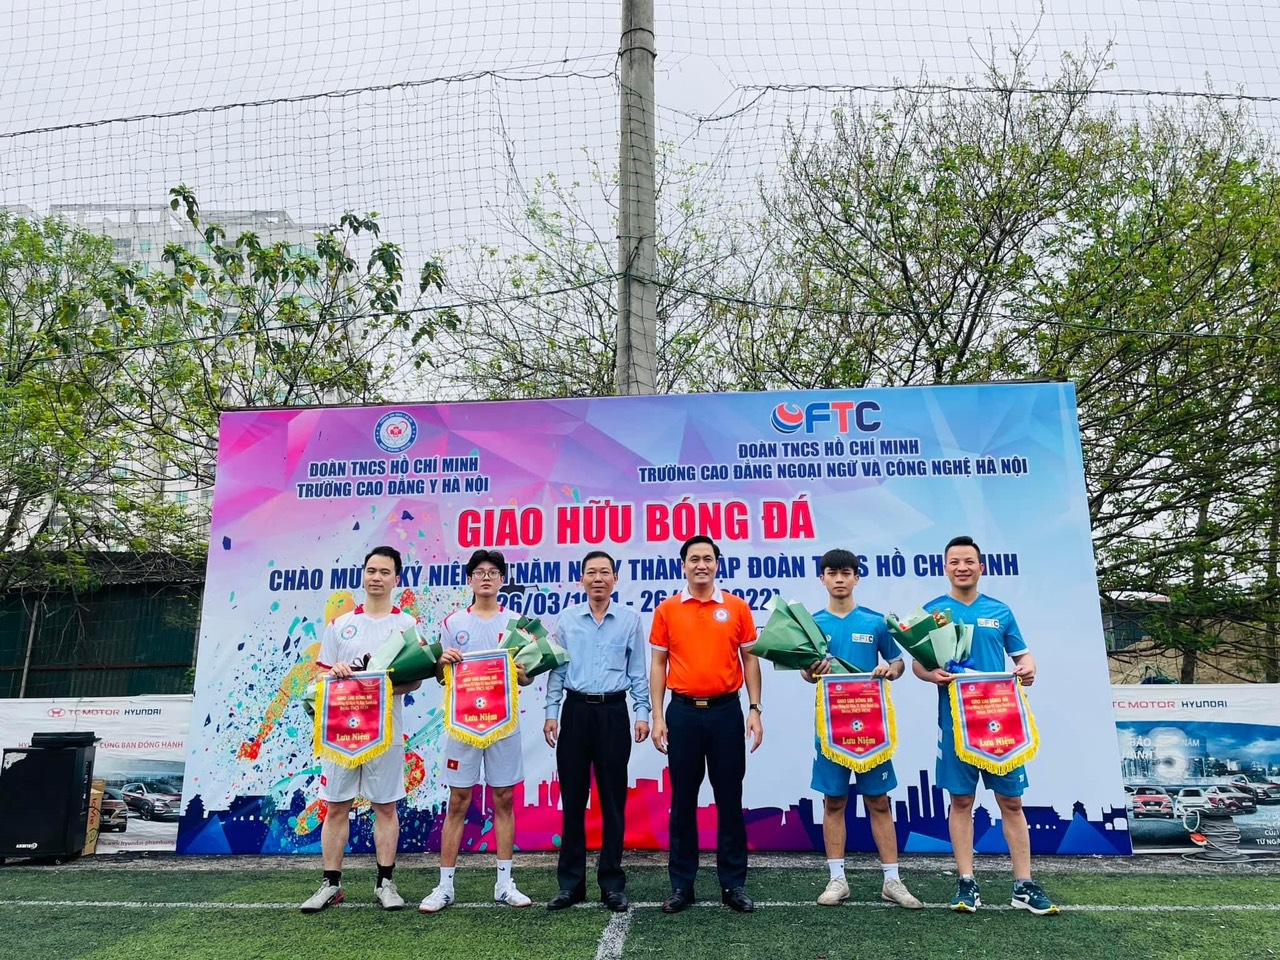 Giao hữu bóng đá chào mừng kỷ niệm 91 năm thành lập Đoàn TNCS Hồ Chí Minh (26/3/1931-26/3/2022) giữa Trường Cao đẳng Ngoại ngữ và Công nghệ Hà Nội và Trường Cao đẳng Y Hà Nội